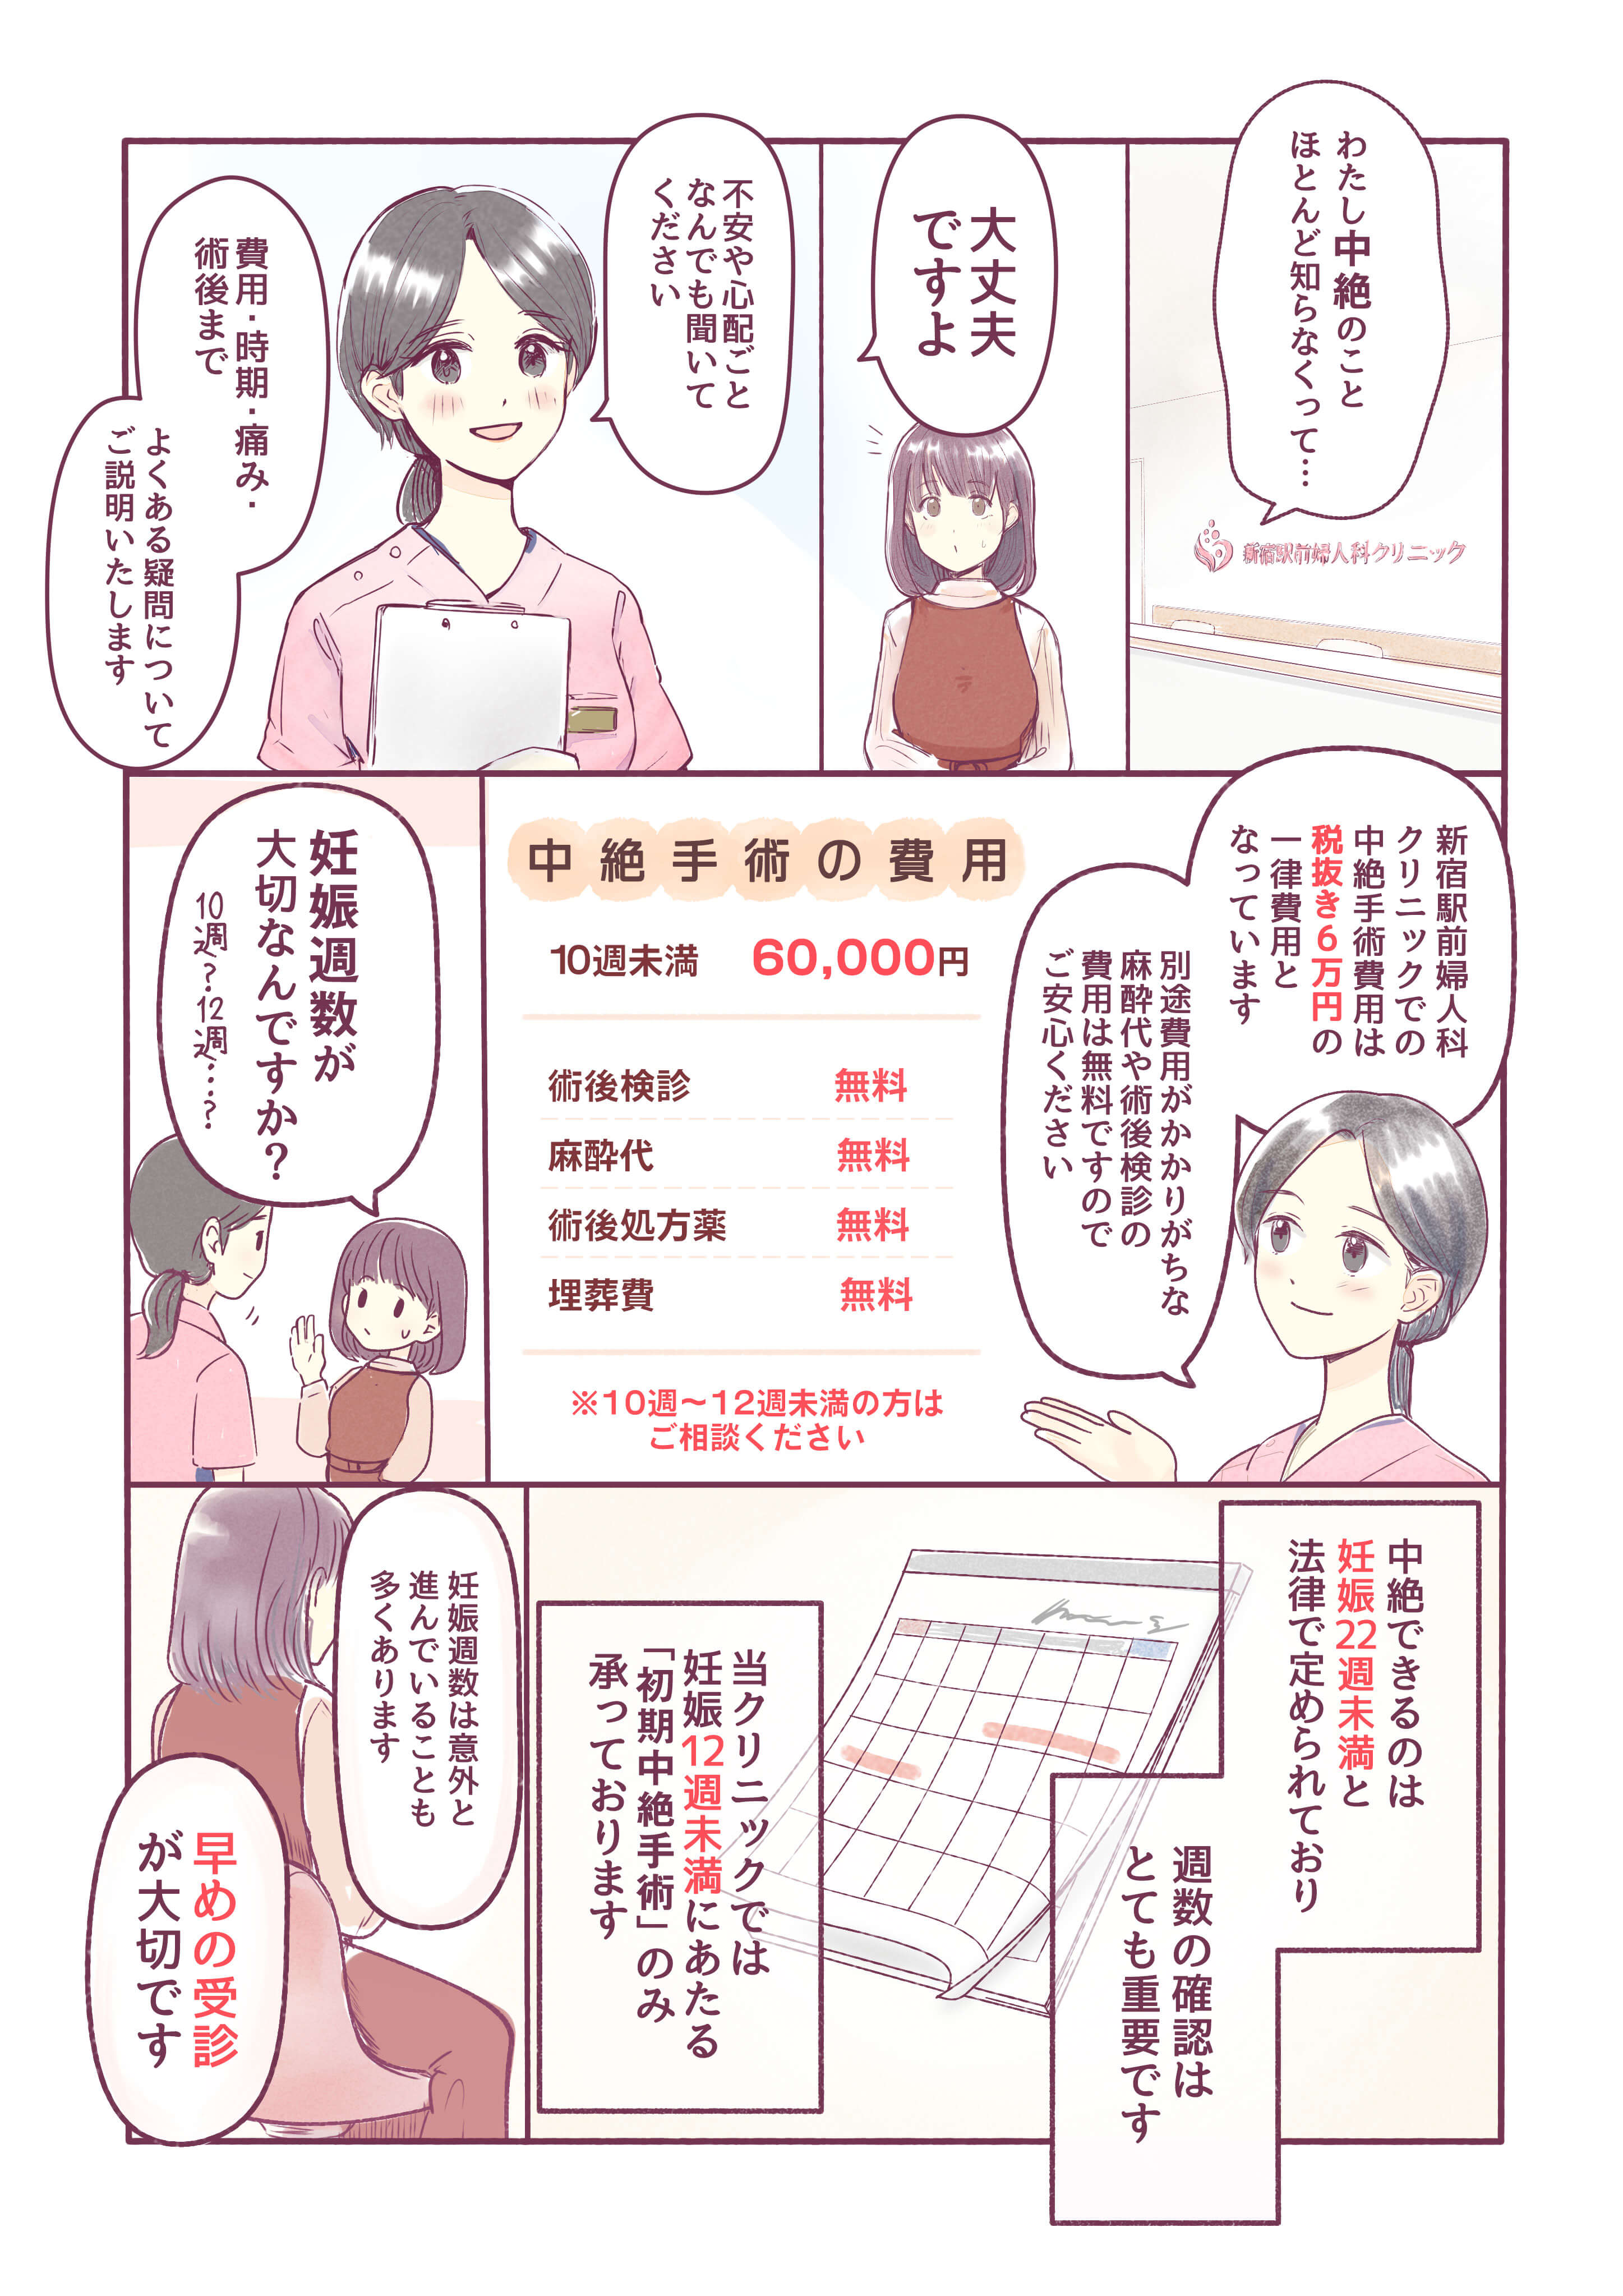 新宿駅前婦人科クリニックの中絶手術の費用・方法・痛みを漫画で解説